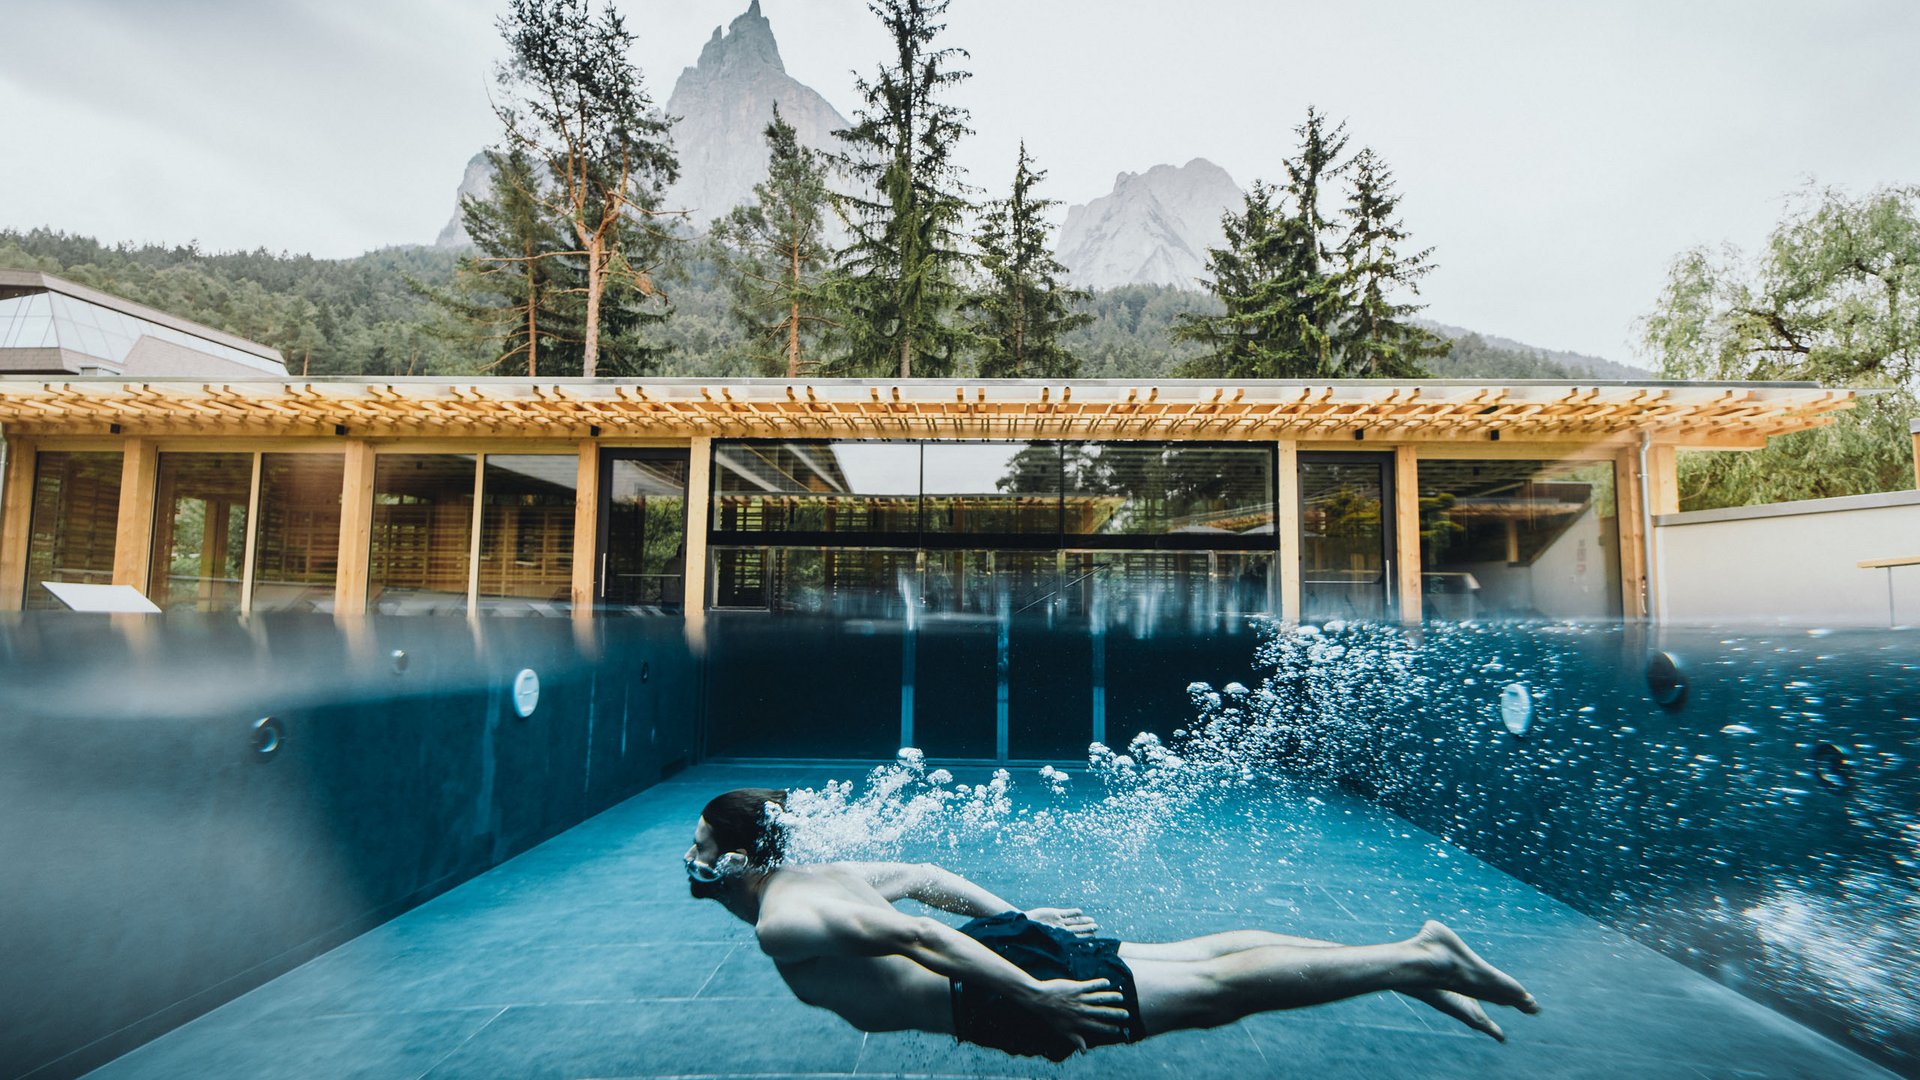 Hotel all’Alpe di Siusi: un tempio di energia per l’anima